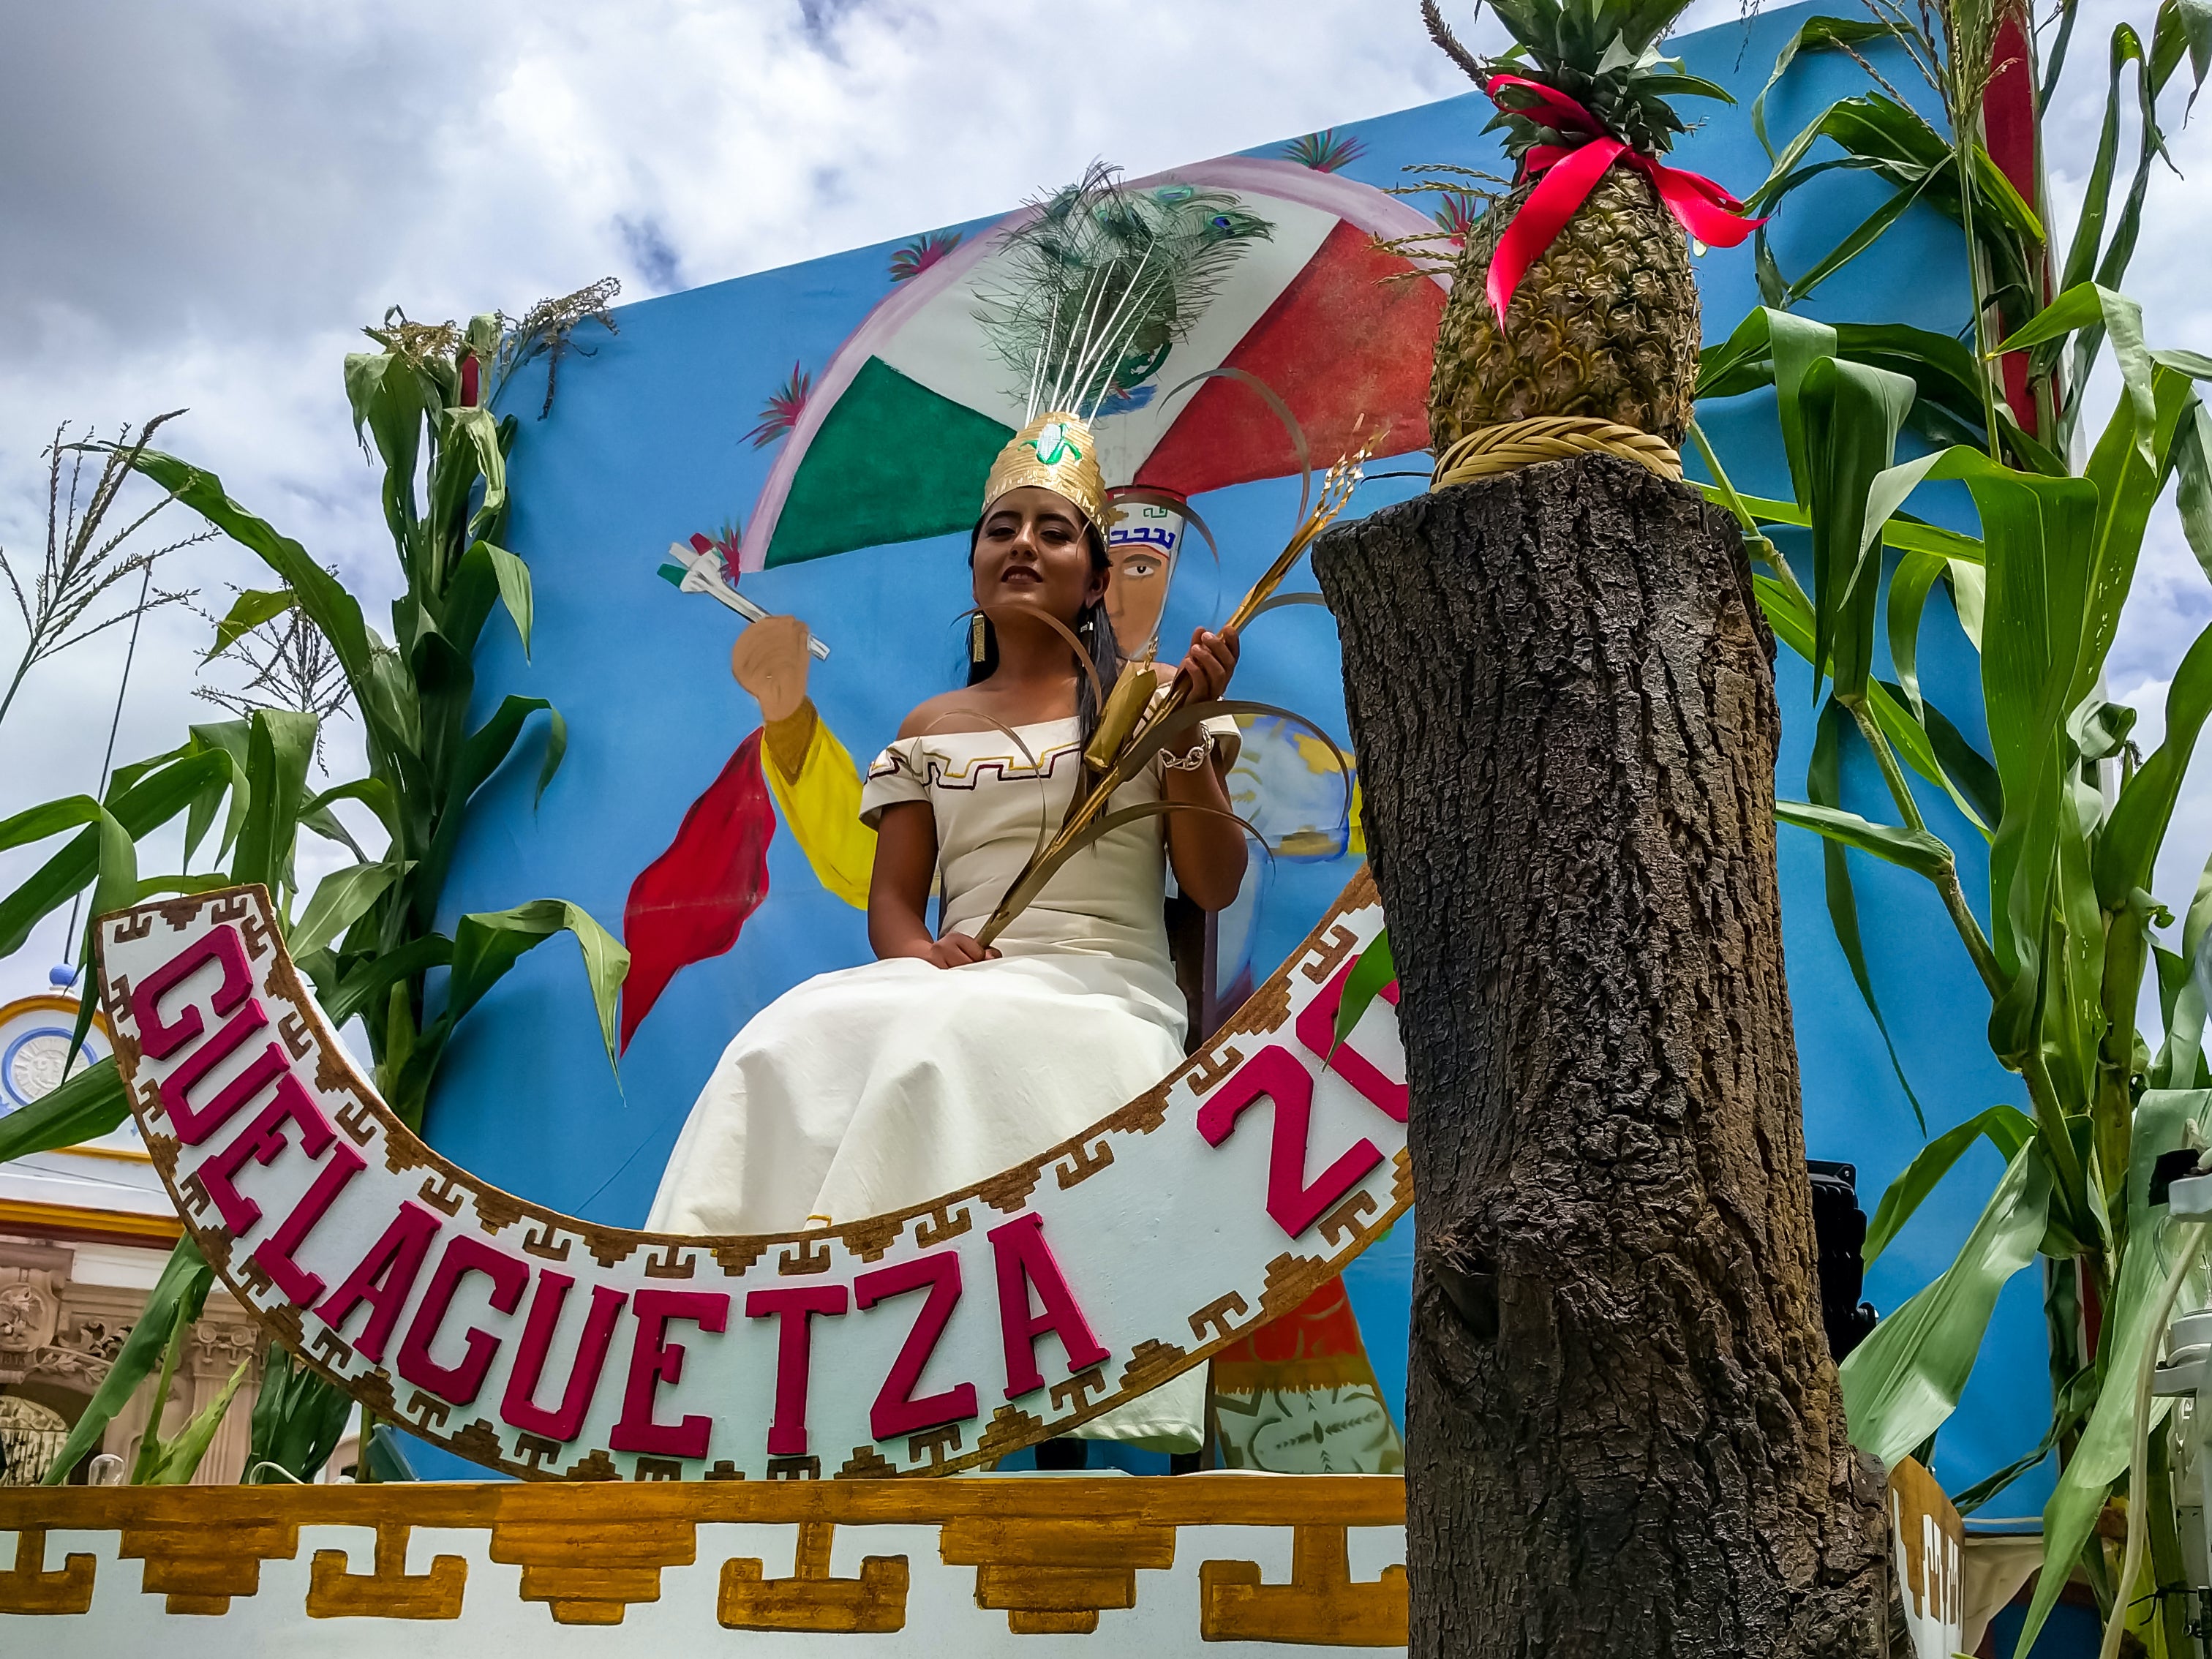 OCOTLAN DE MORELOS, OAXACA - La Embajadora de la celebración local de la Guelaguetza se muestra sentada en su carroza el 24 de julio de 2017.